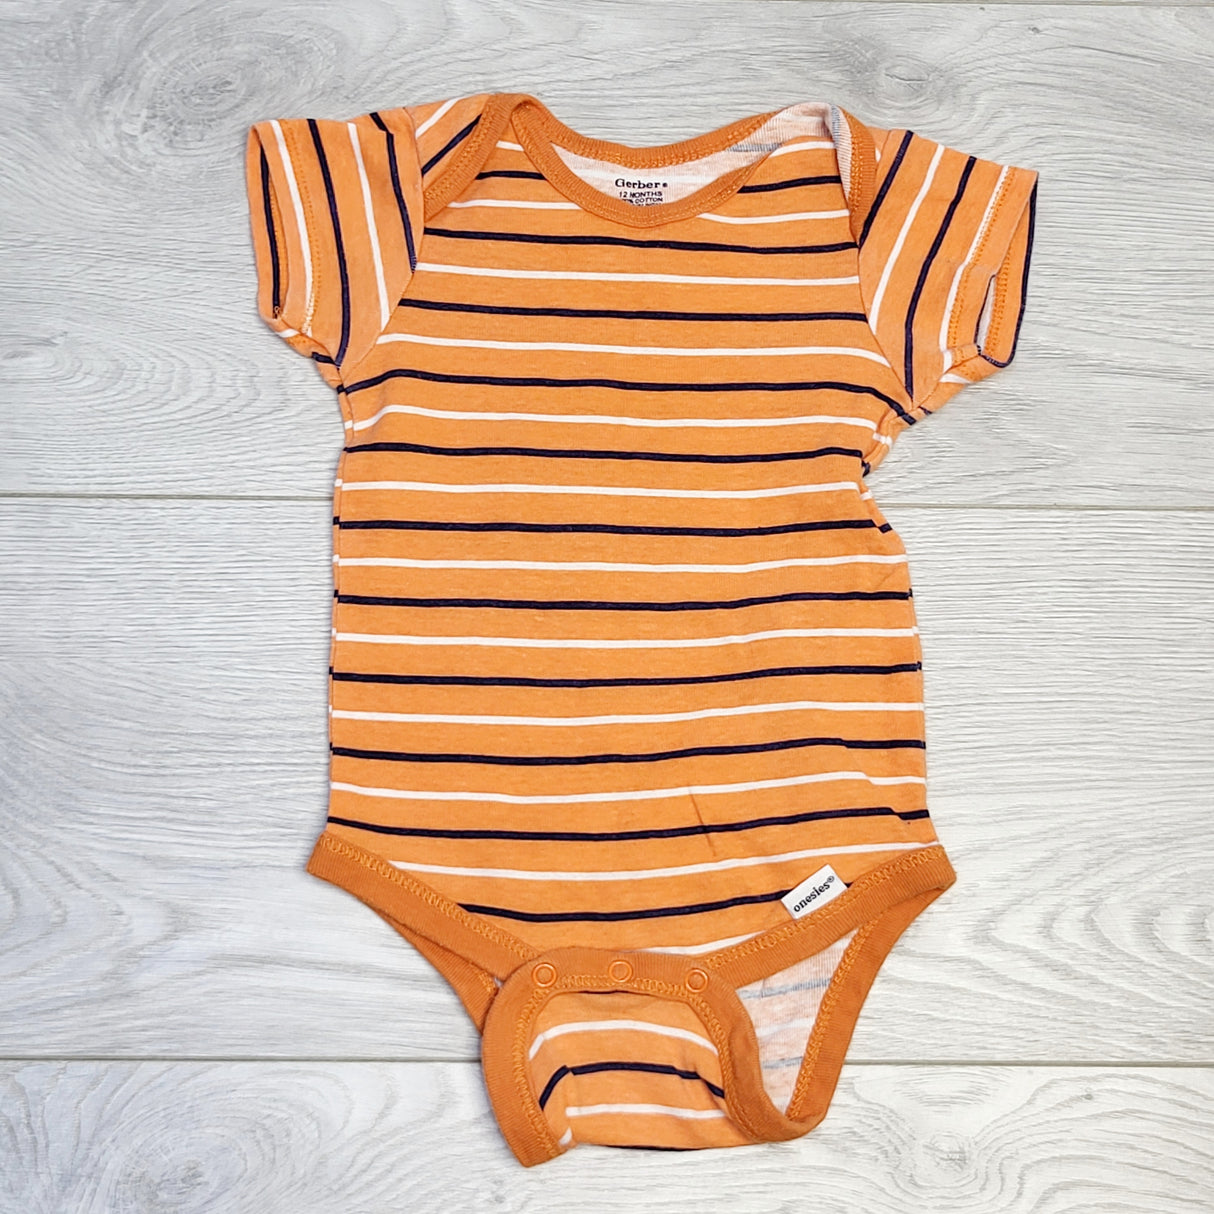 CHOL1 - gerber orange striped onesie, size 12 months